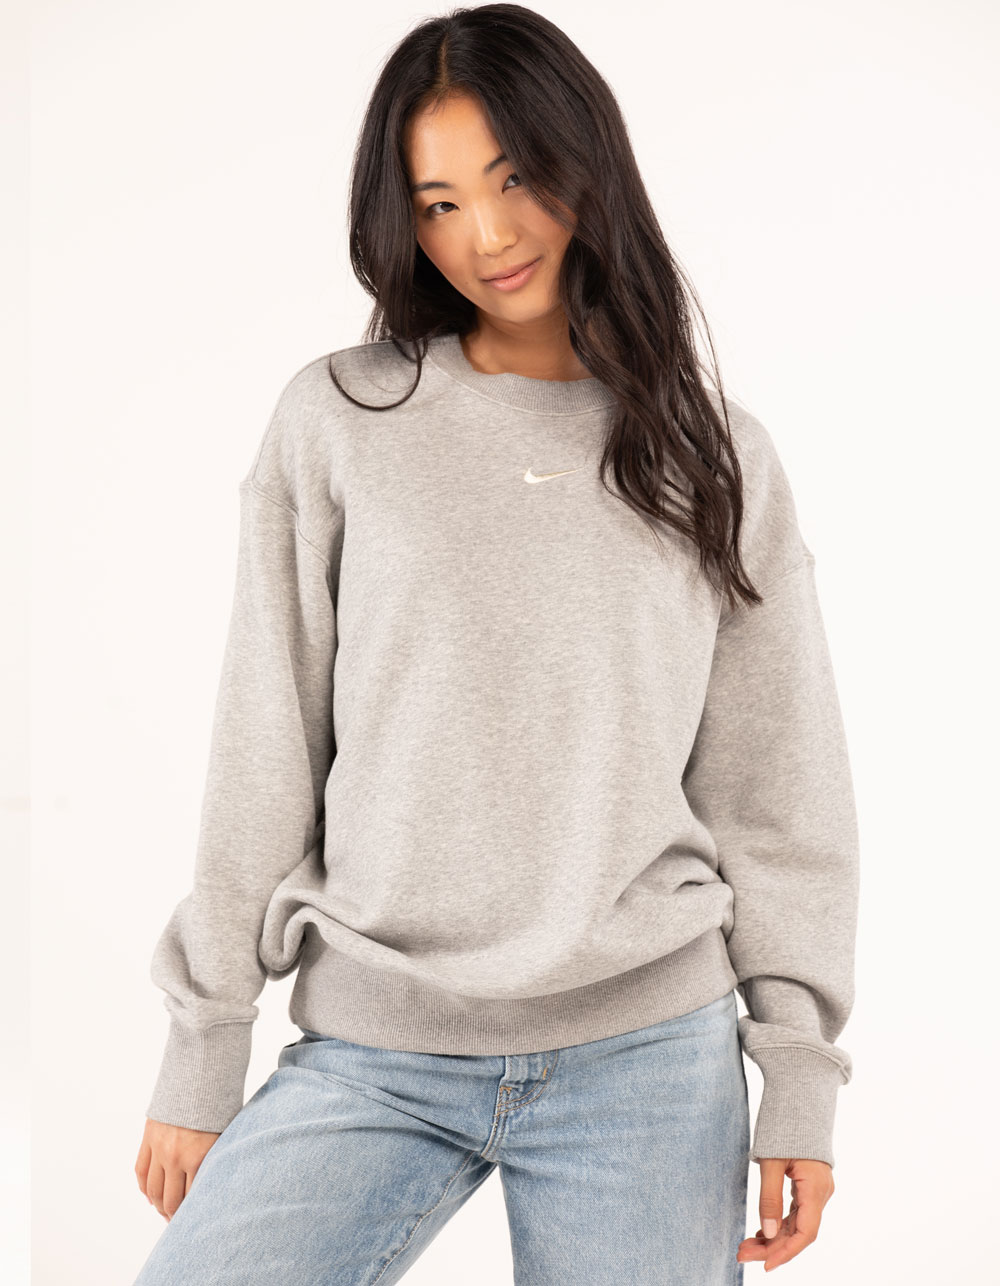 NIKE Sportswear Phoenix Fleece Womens Oversized Sweatshirt